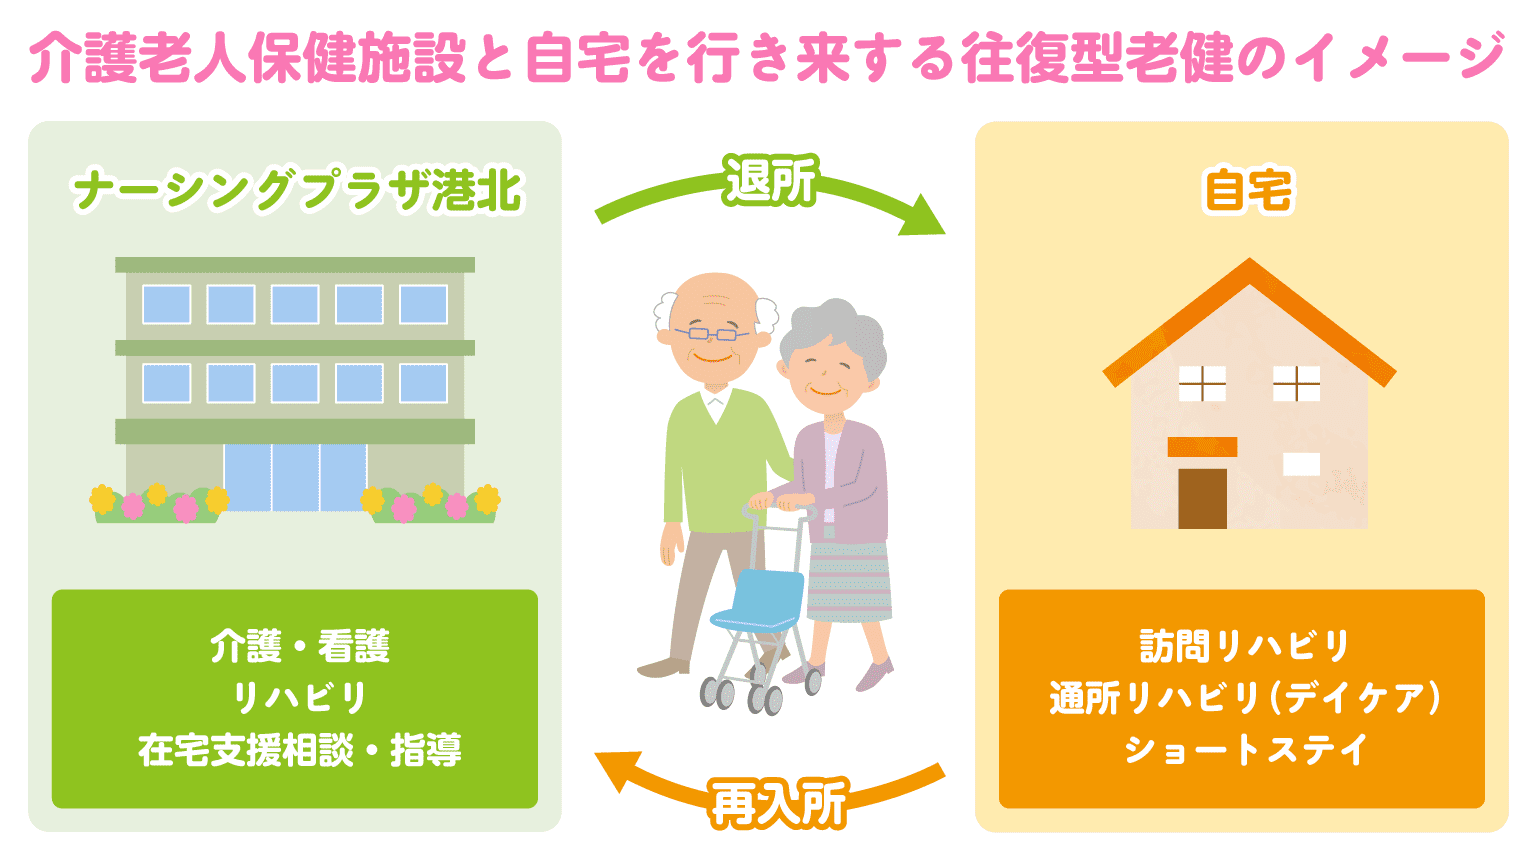 介護老人保健施設と自宅を行き来する往復型老健のイメージ